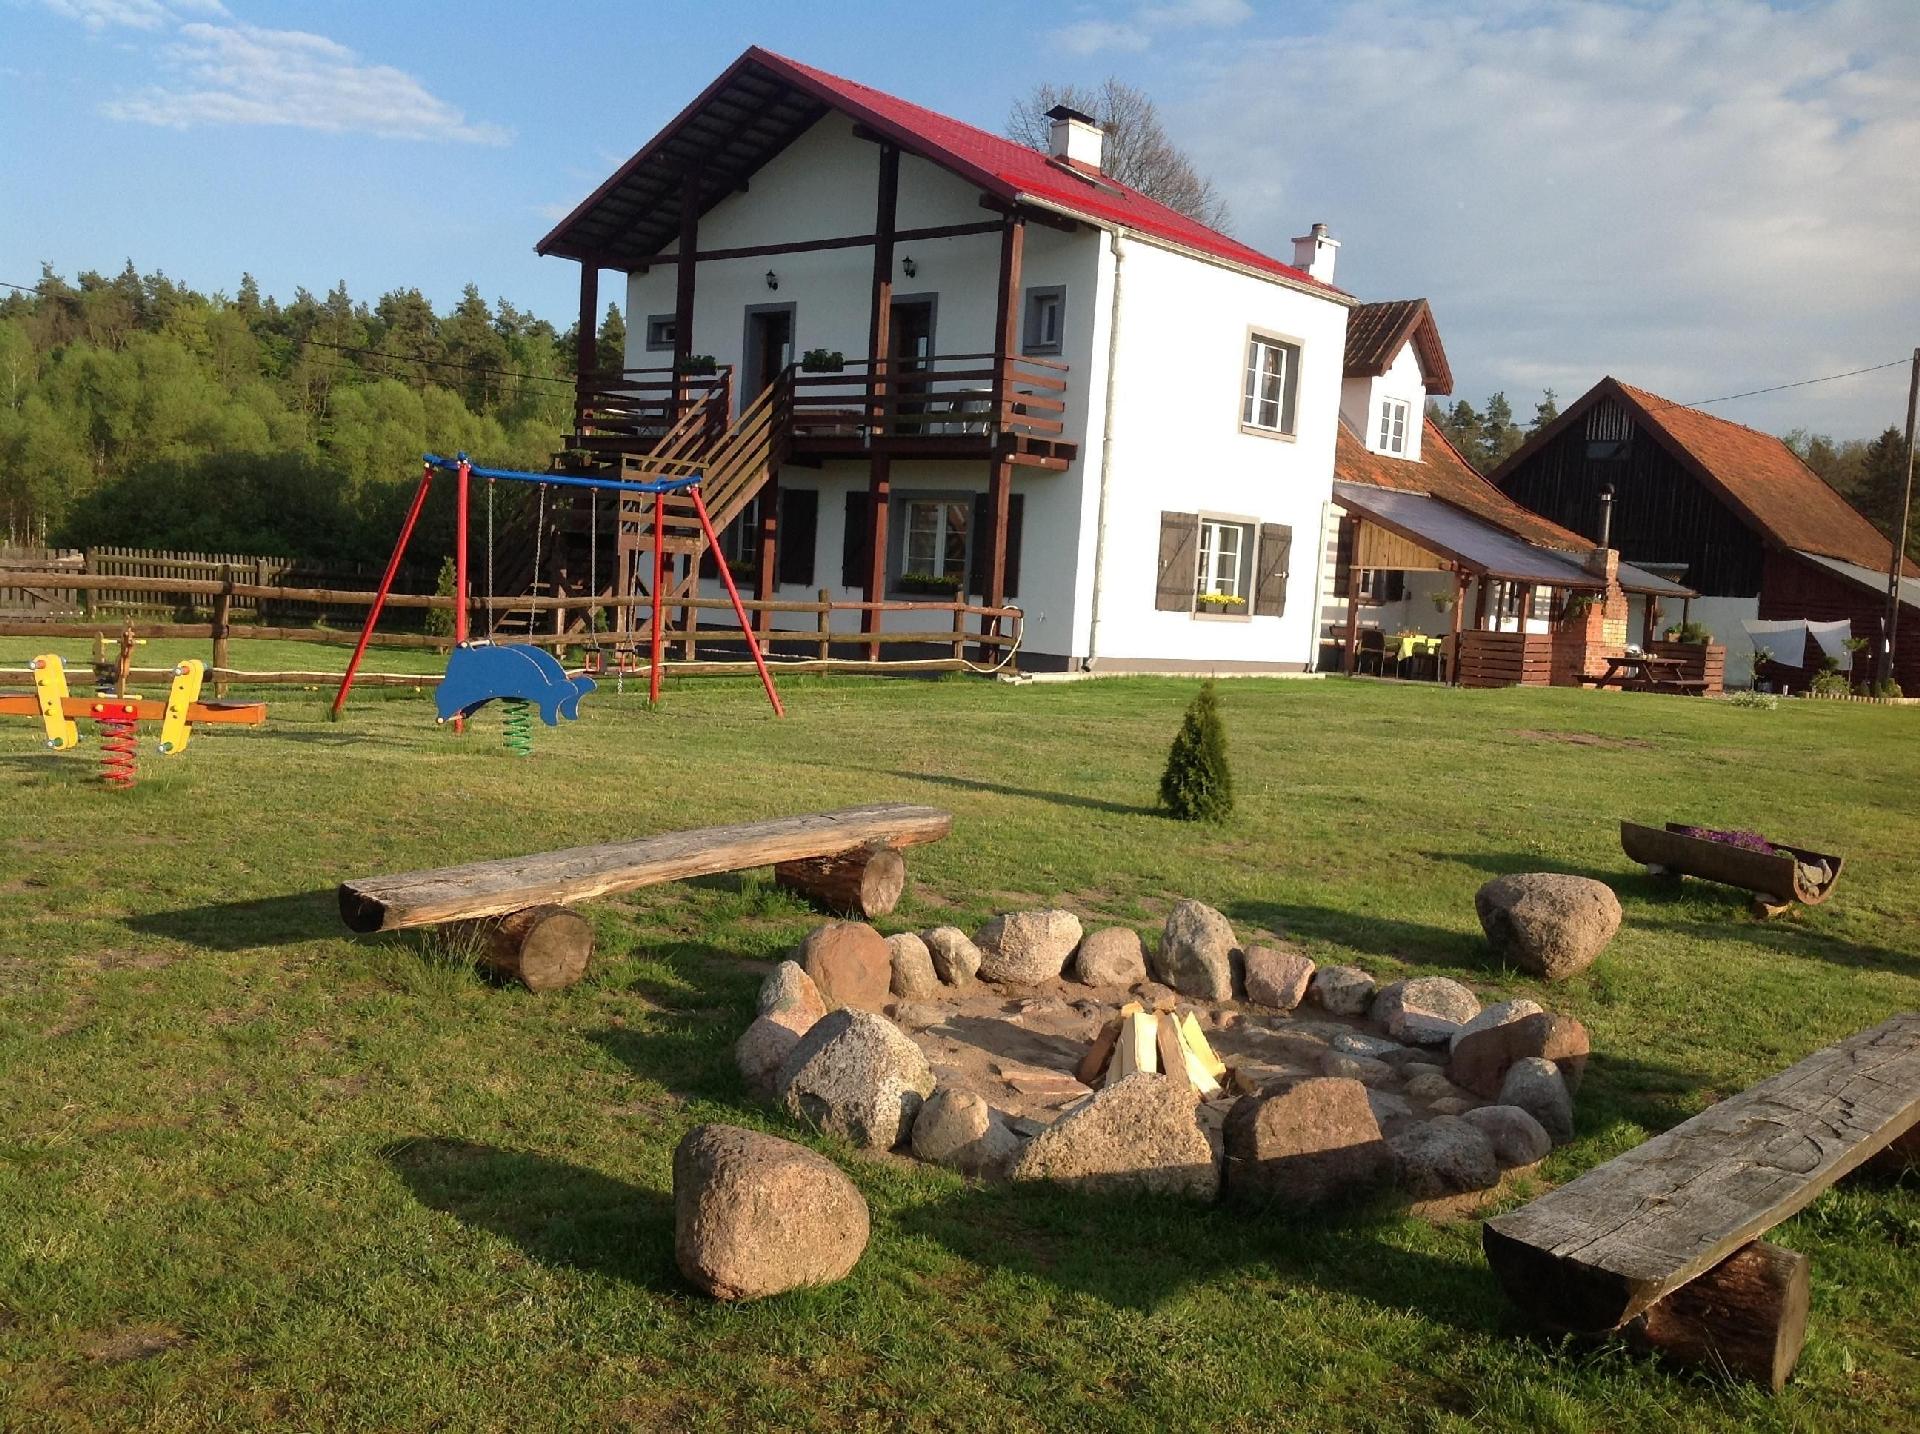 Ferienwohnung für 4 Personen  + 1 Kind ca. 75 Bauernhof in Polen